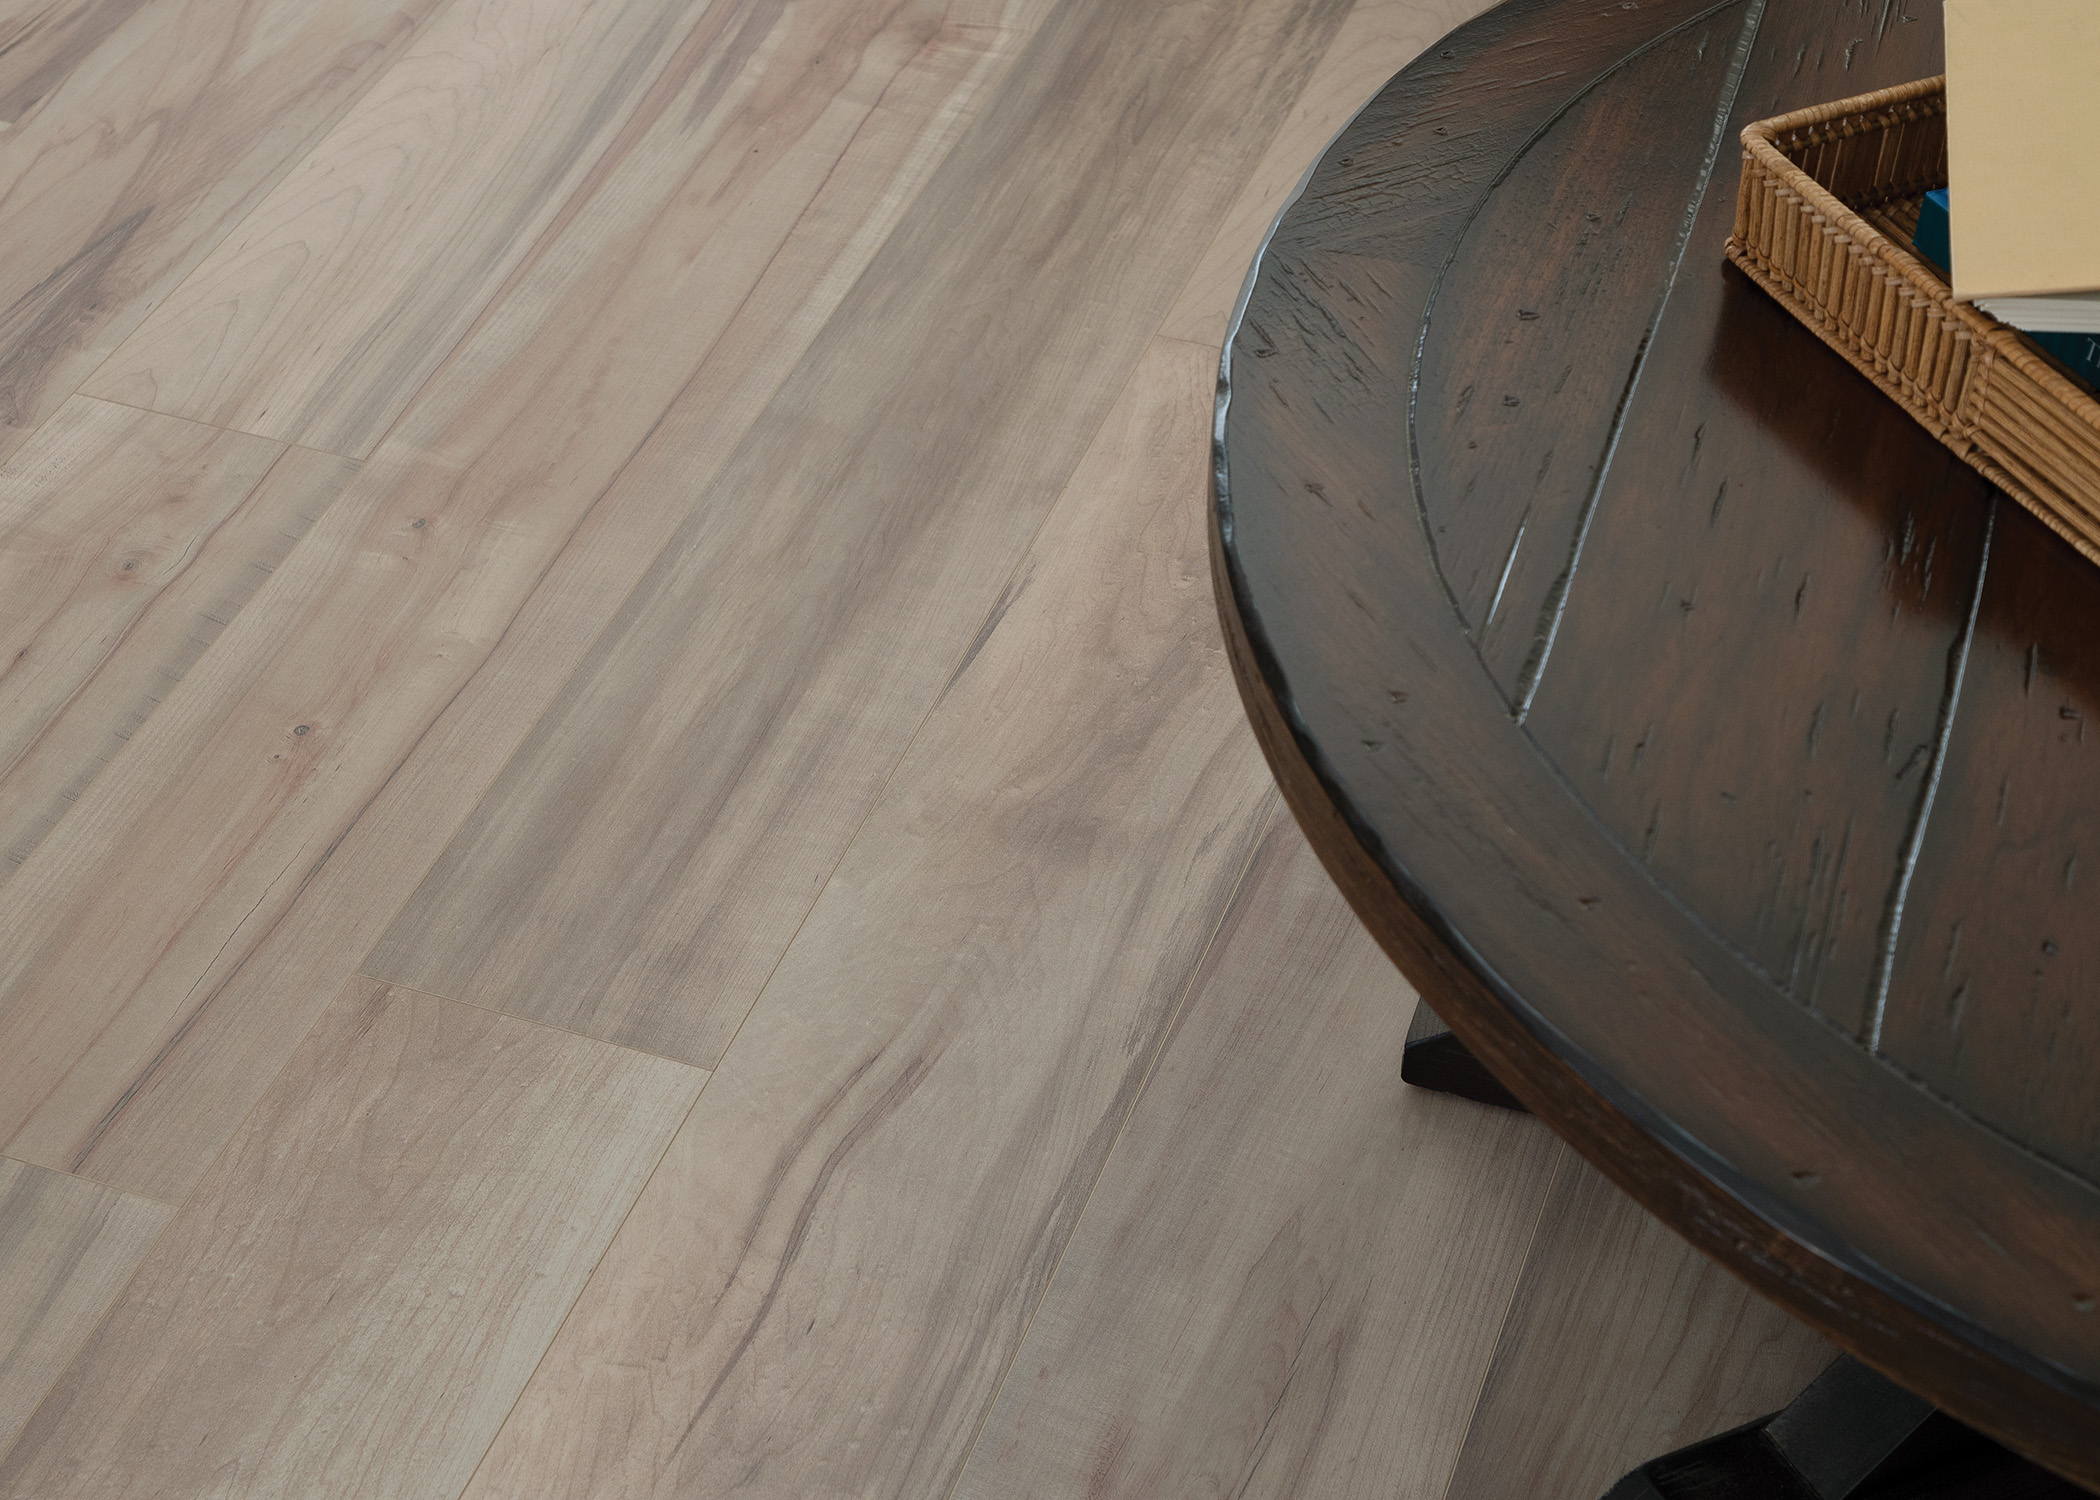 7mm+Pad Preston Peak Marble Hybrid Resilient Flooring closeup of floor in living room with dark brown coffee table